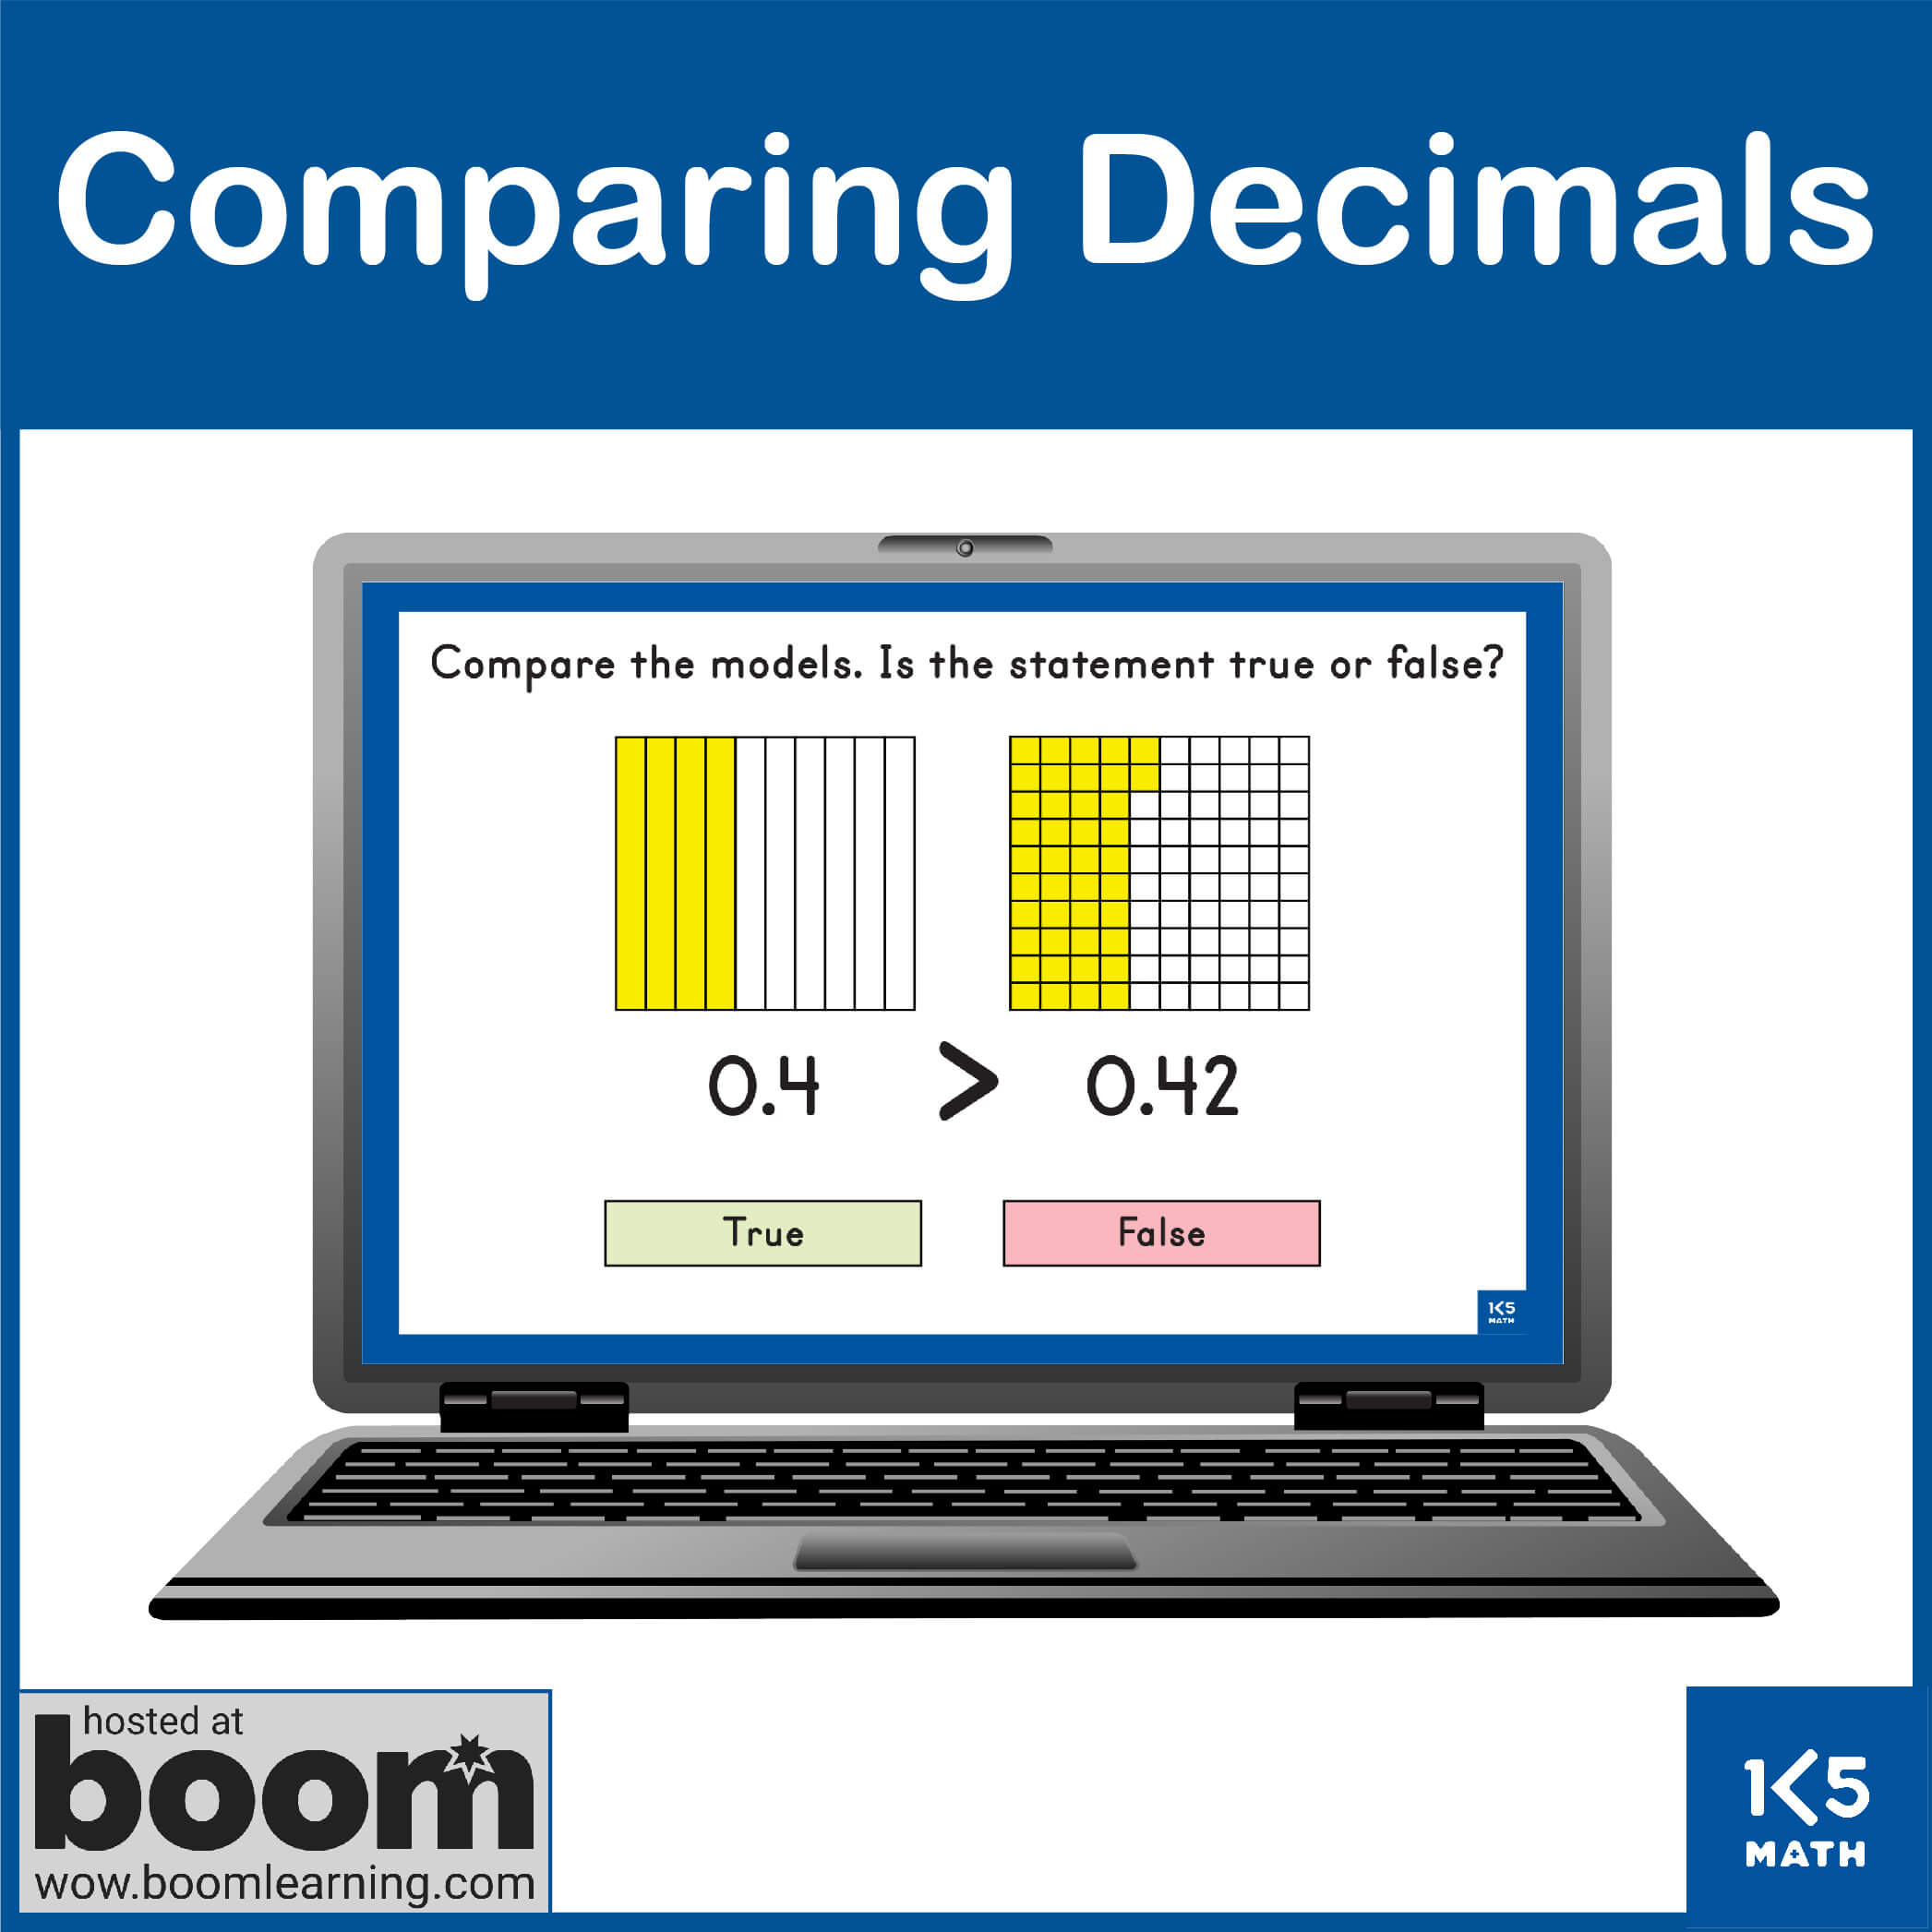 Boom Cards: Comparing Decimals